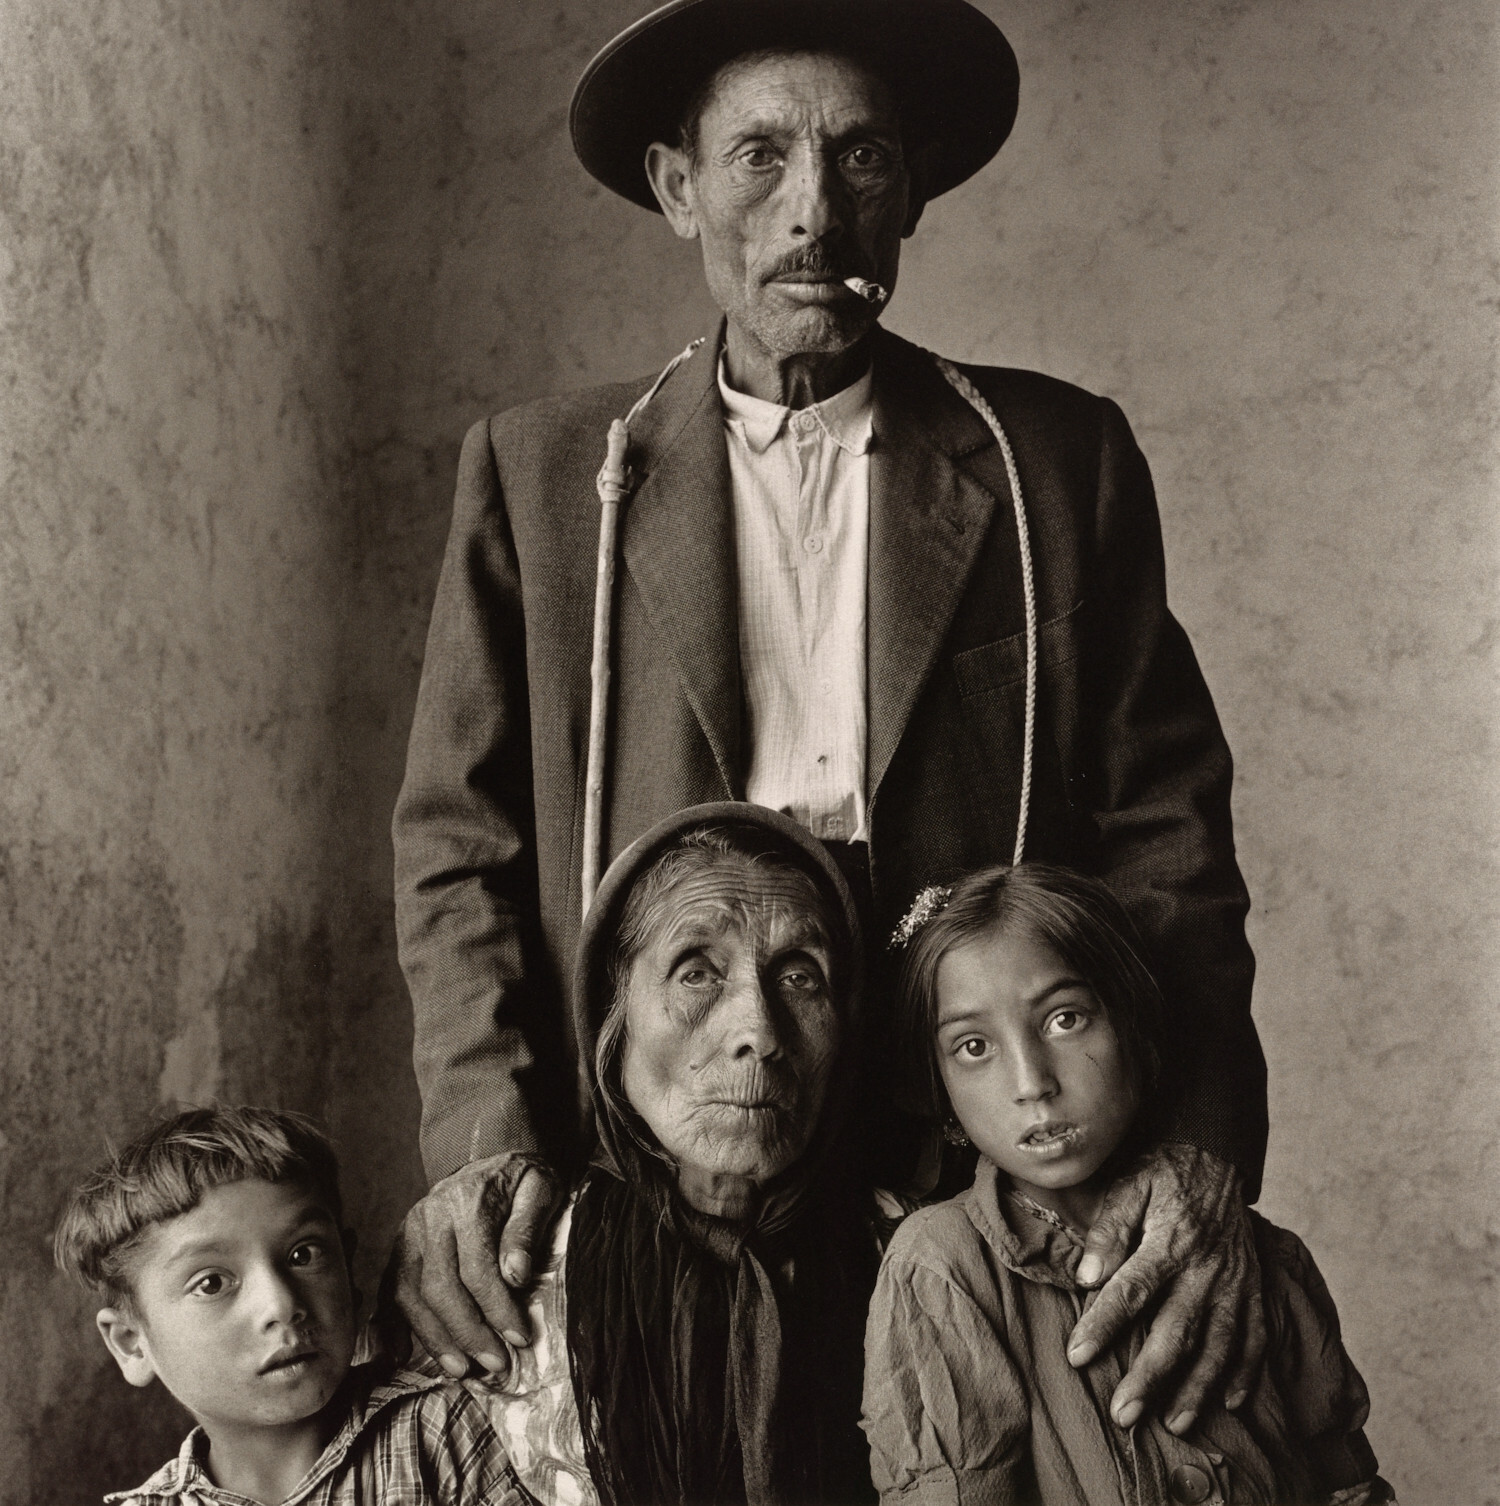 Цыганская семья, Эстремадура, Испания, 1965 год. Фотограф Ирвин Пенн